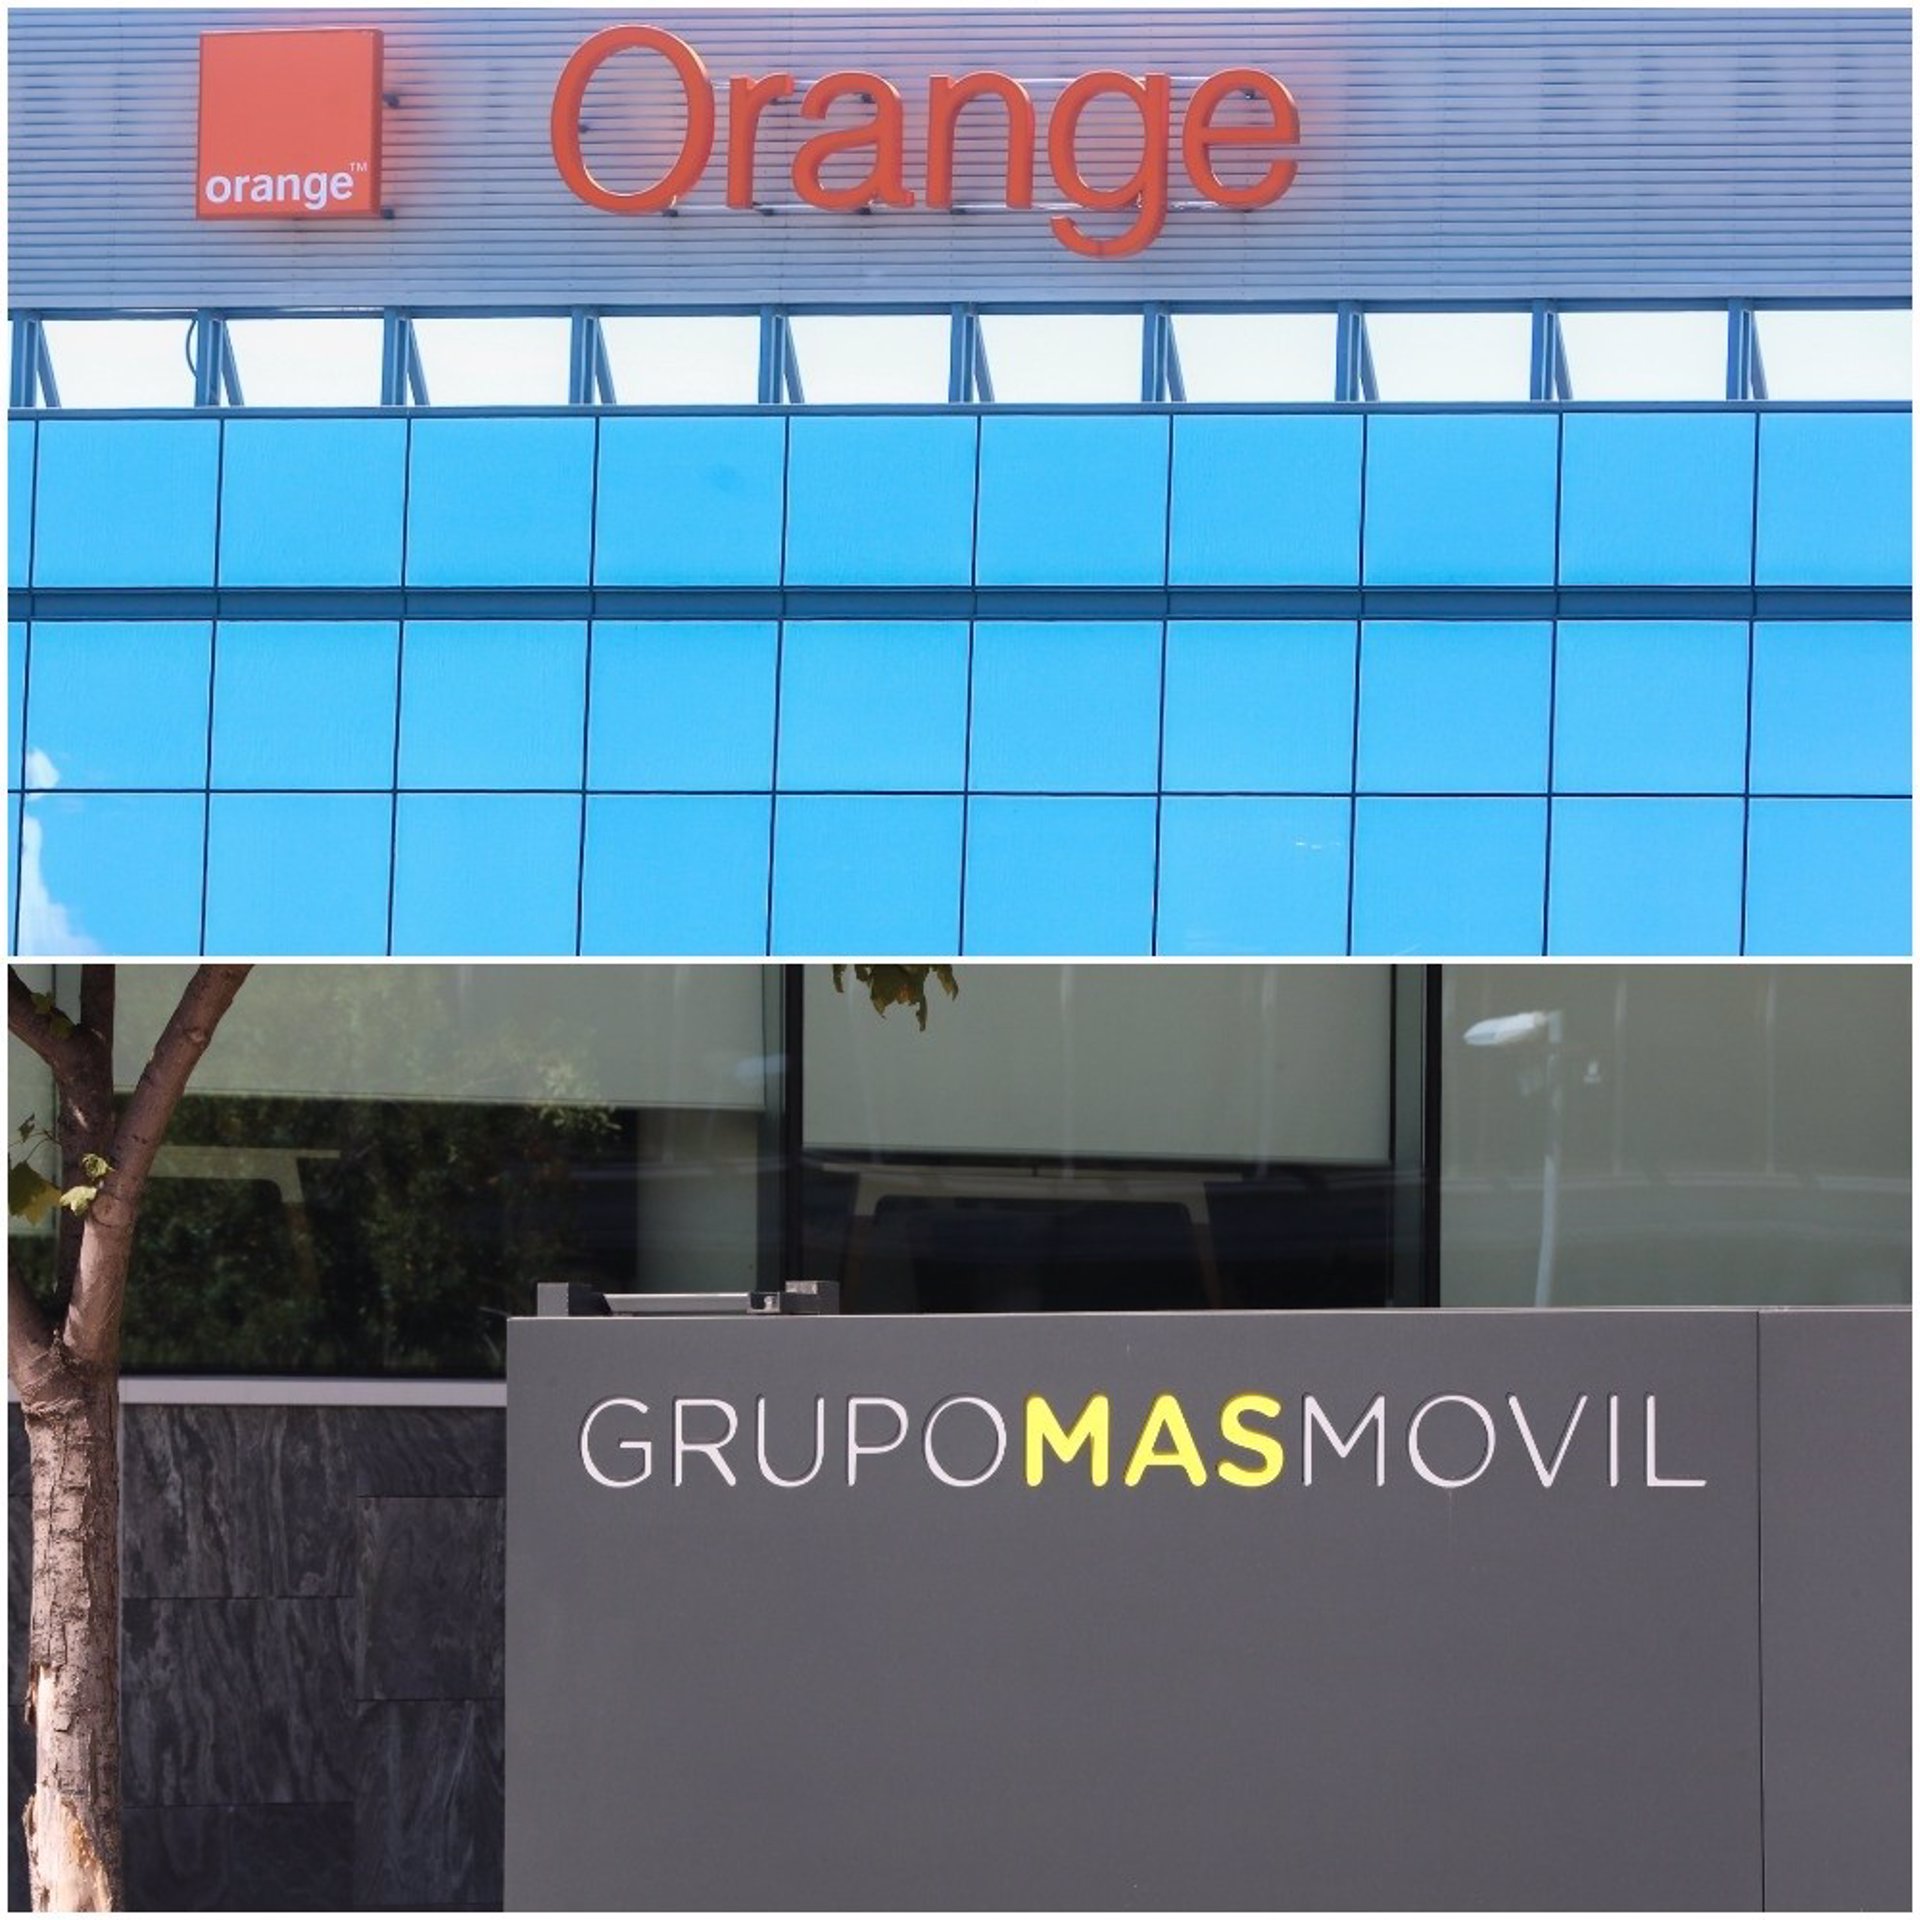 Empresas Orange Y Másmóvil Cierran Su Fusión En España 2184